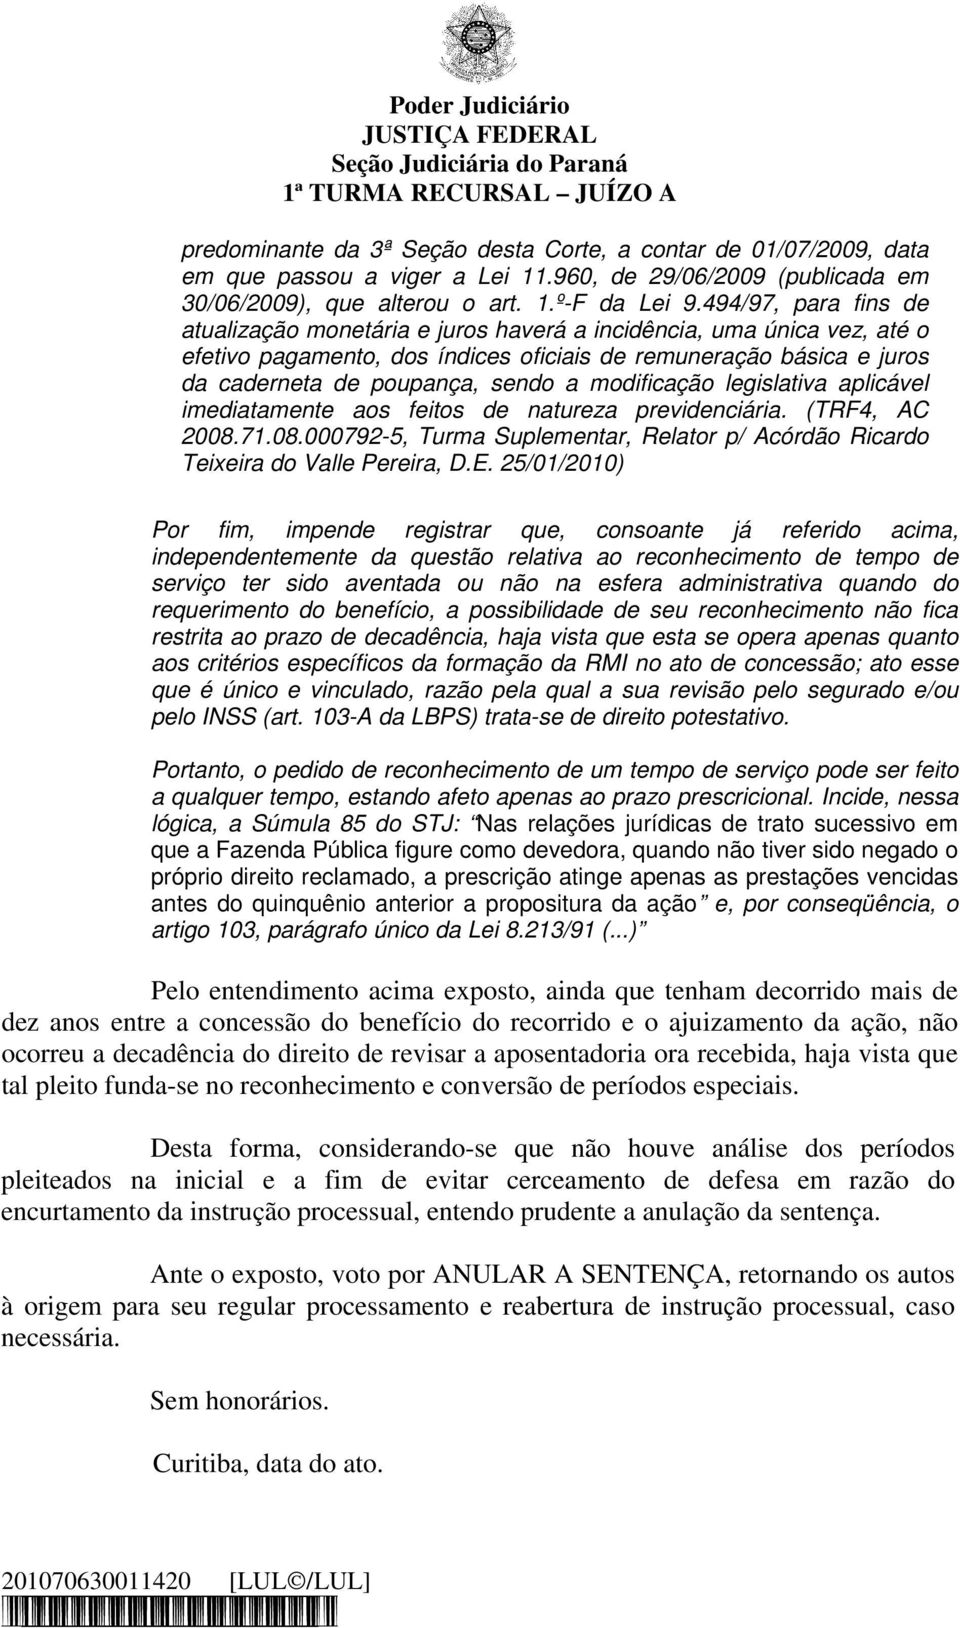 modificação legislativa aplicável imediatamente aos feitos de natureza previdenciária. (TRF4, AC 2008.71.08.000792-5, Turma Suplementar, Relator p/ Acórdão Ricardo Teixeira do Valle Pereira, D.E.